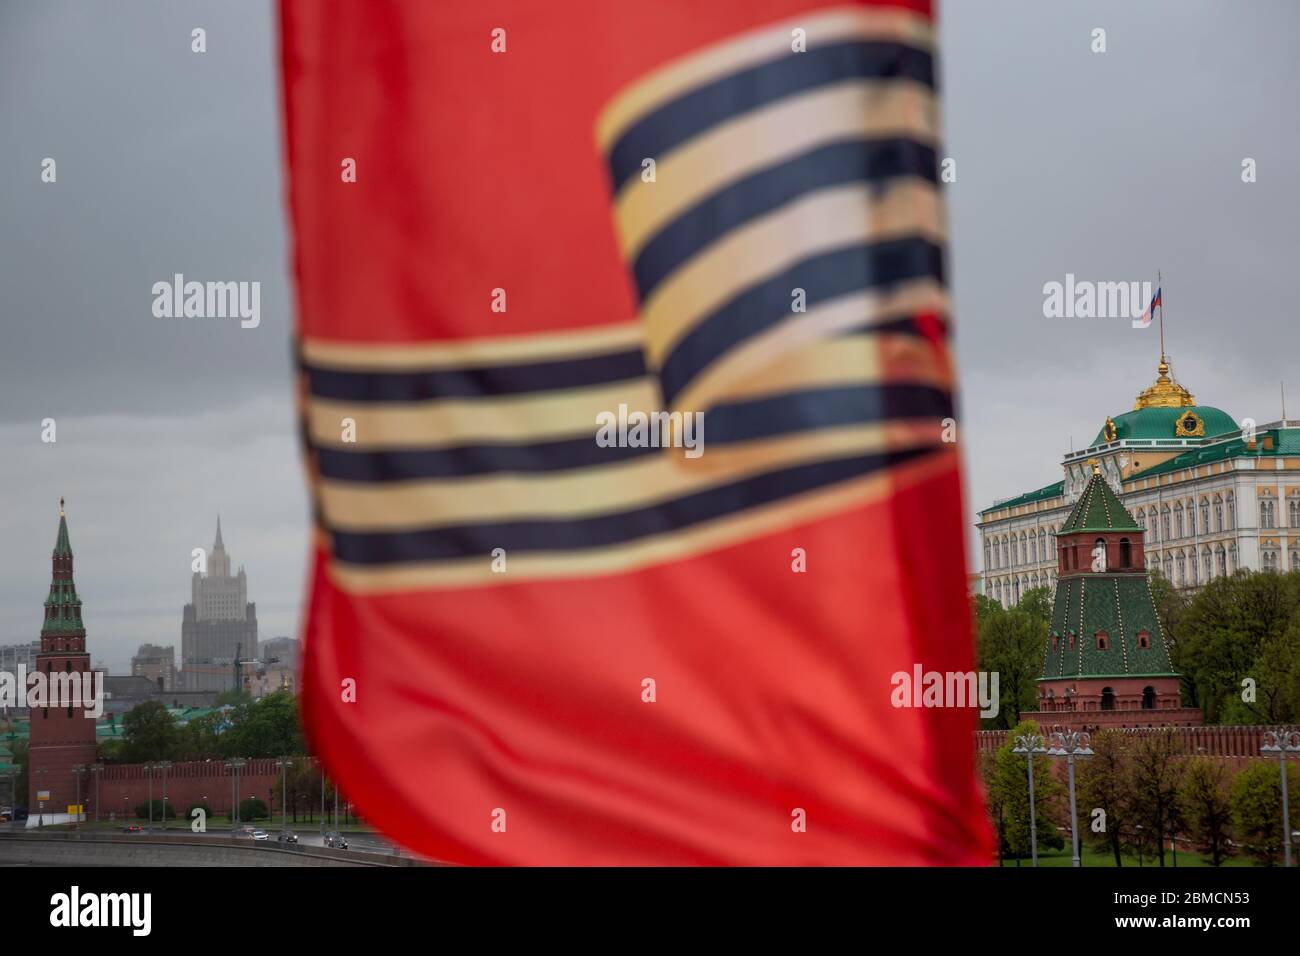 Moscou, Russie. Le pont 2020 Bolchoy Moskvoretsky est décoré de bannières rouges avec l'image du ruban de Saint-Georges sur fond du Kremlin de Moscou dans le centre de Moscou, en Russie Banque D'Images